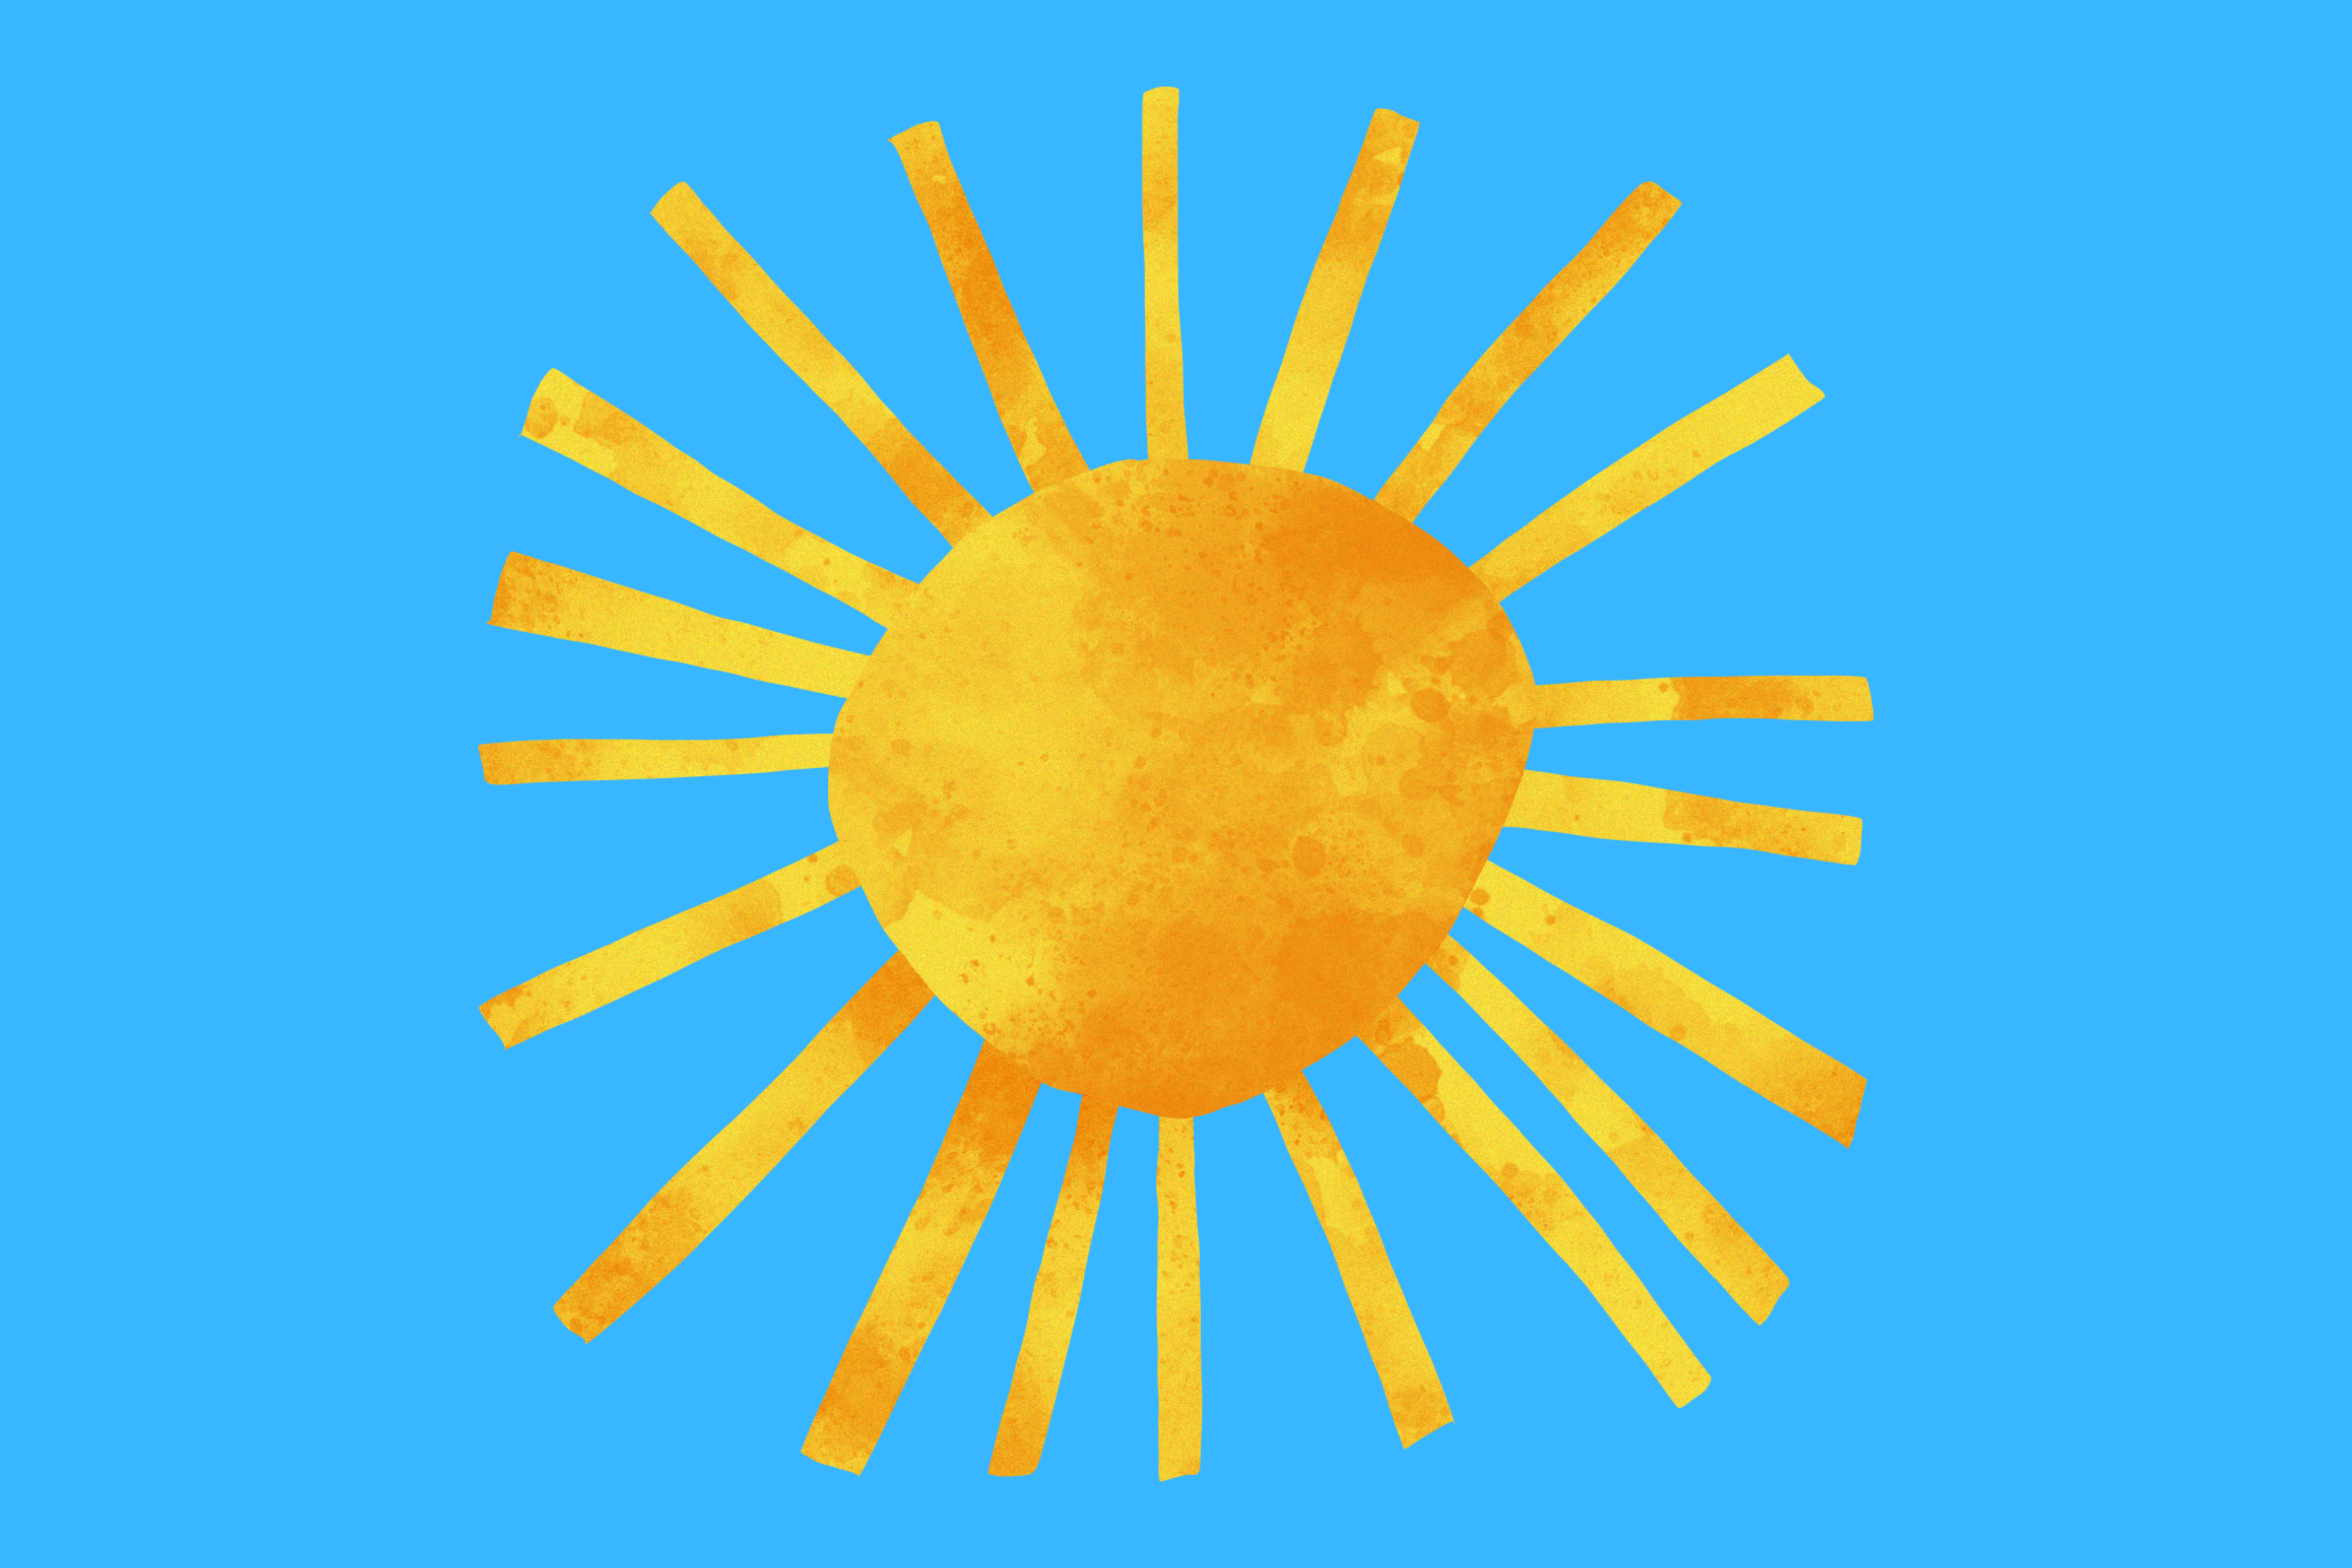 Das Bild zeigt eine gelbe Sonne auf blauem Grund.